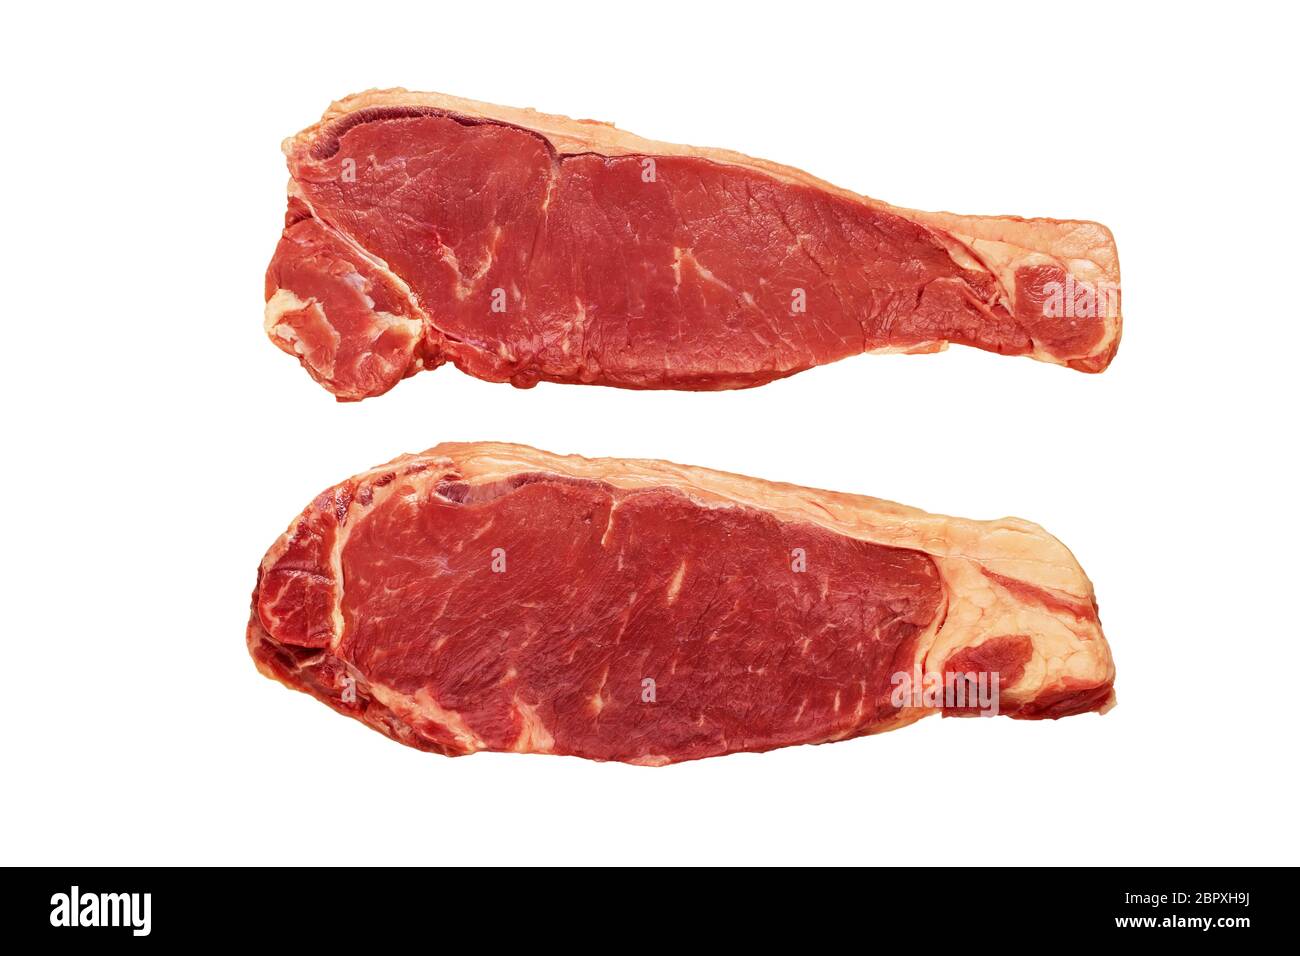 Rinderfiletscheiben auf weiß isoliert. Dunkel gealtertes Fleisch von einjährigen Rindern. Gelbe Streifen von Fett. Stockfoto